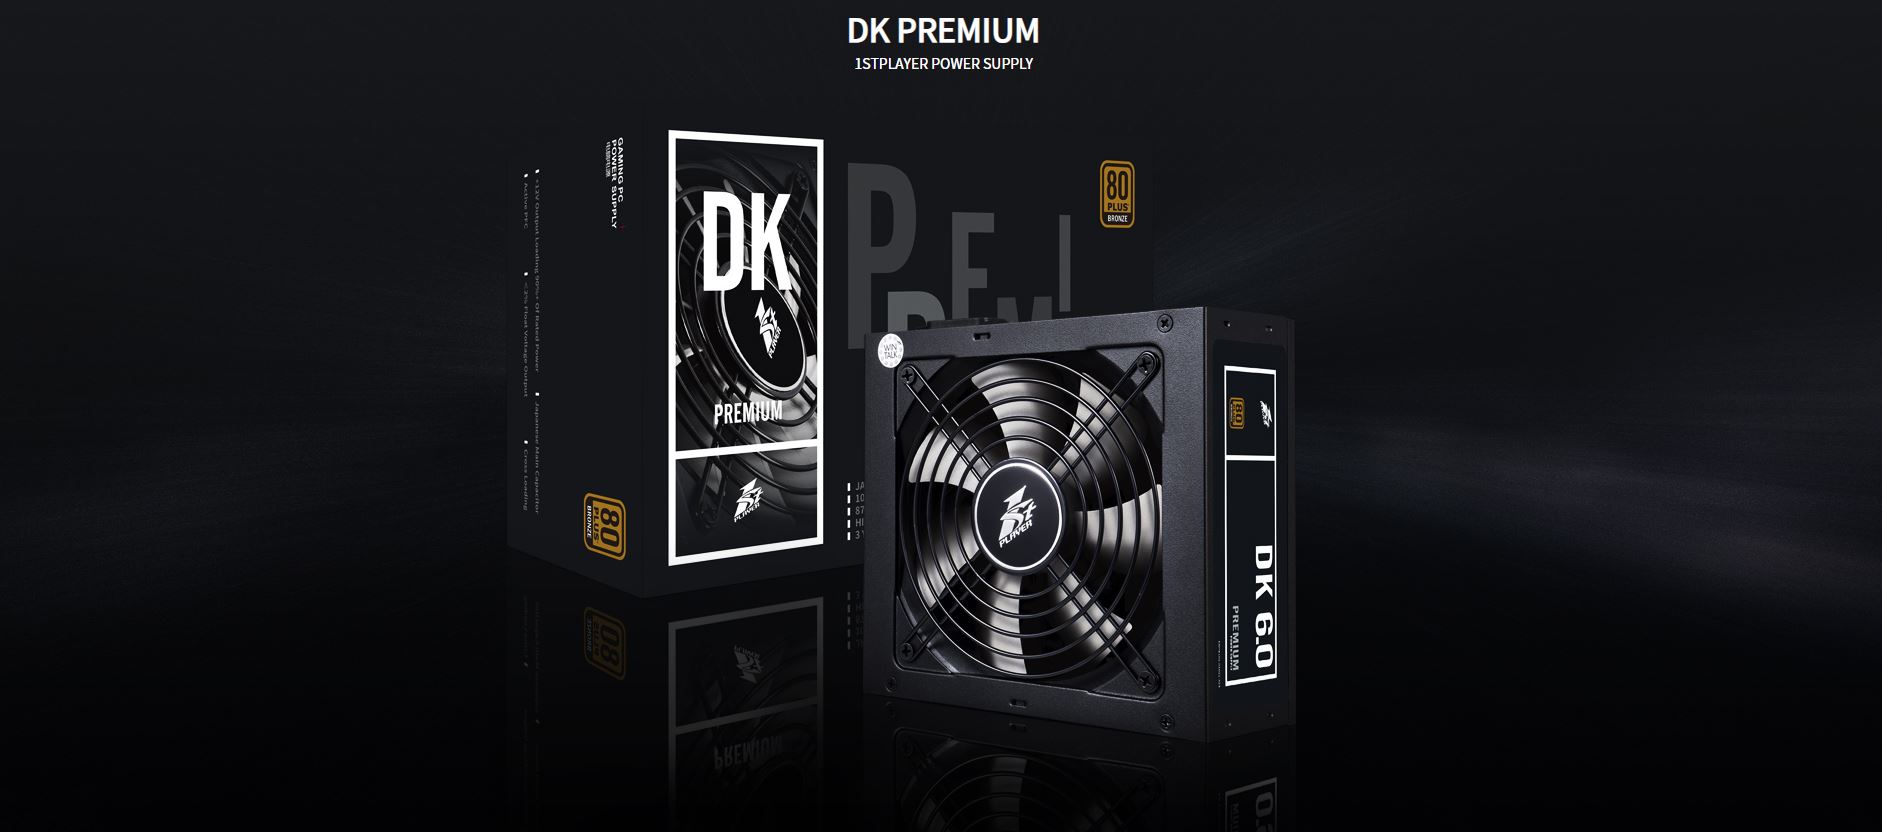 DK PREMIUM 5.0/6.0 POWER SUPPLY